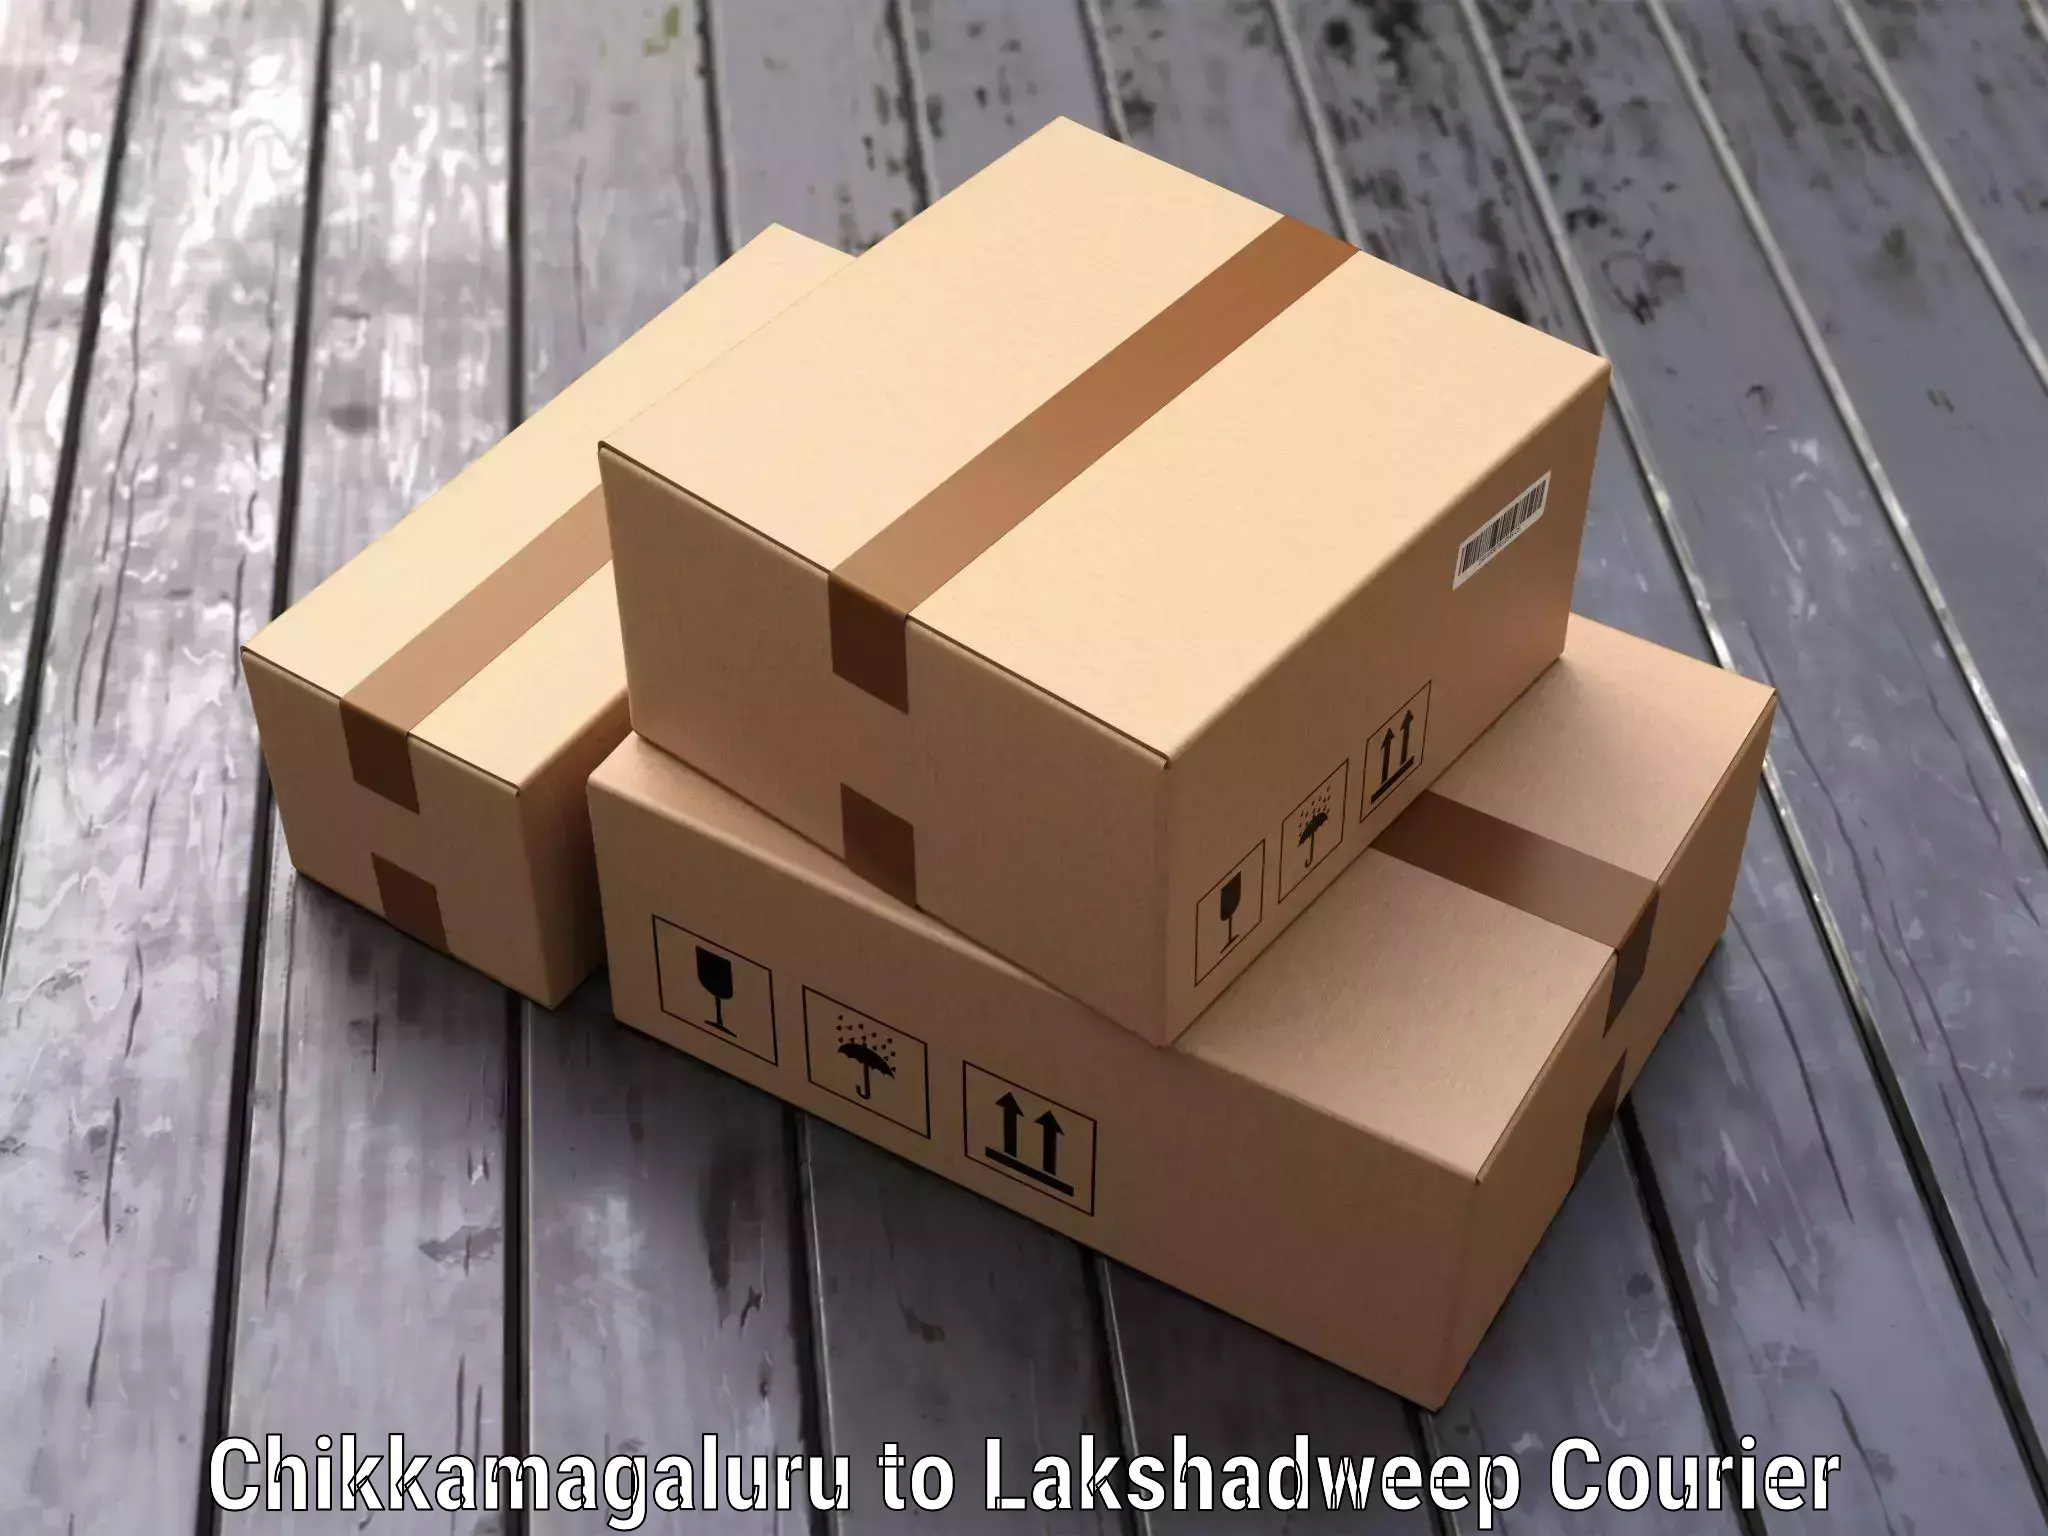 Luggage delivery optimization Chikkamagaluru to Lakshadweep